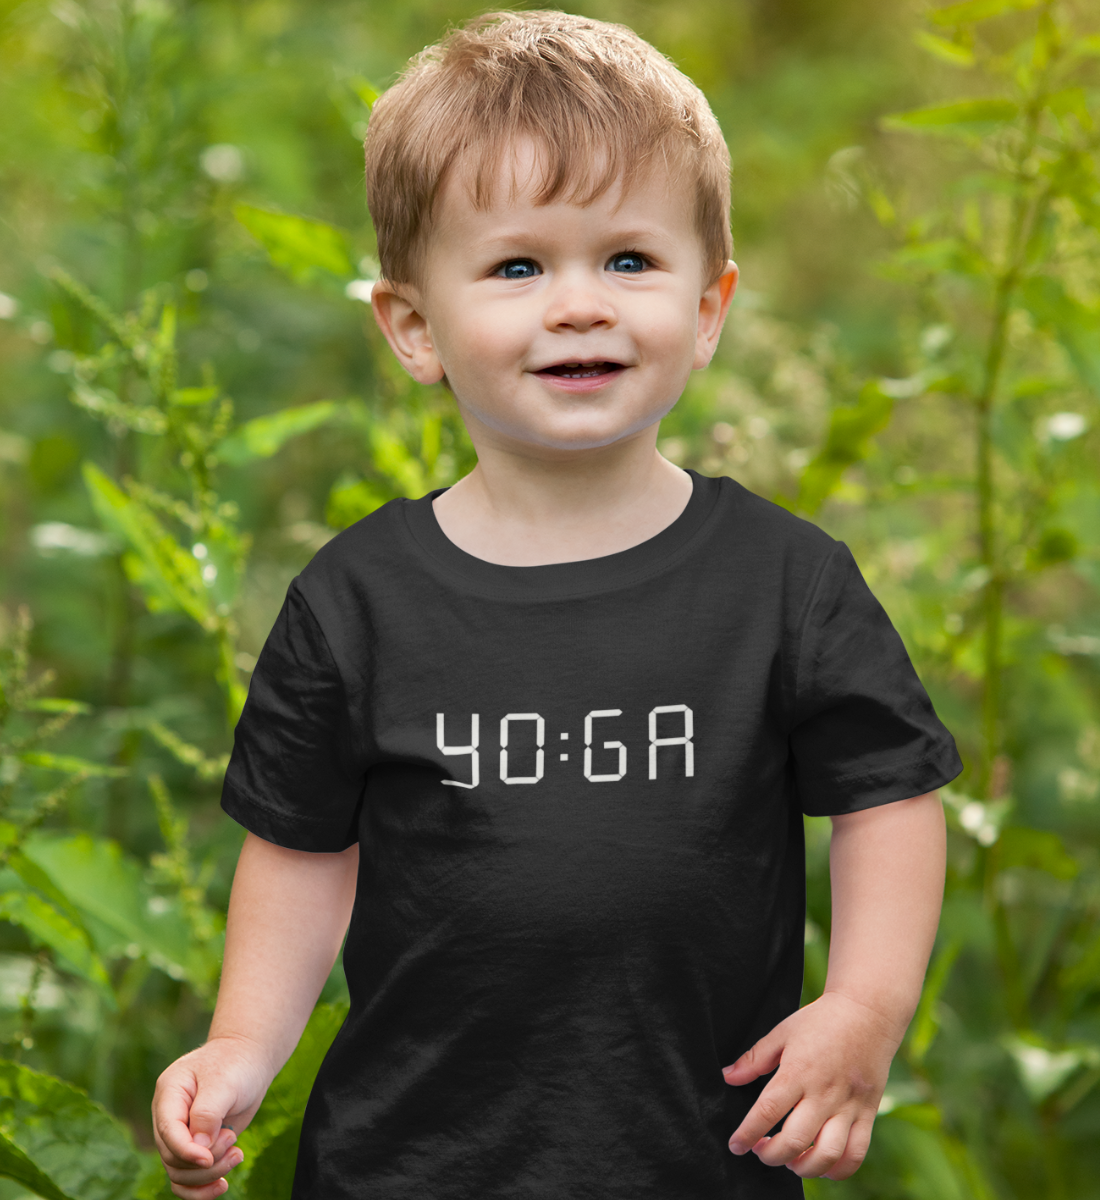 zeit für yoga l yoga shirt kinder l yoga kleidung kinder l nachhaltige mode für kinder l vegane kinder mode